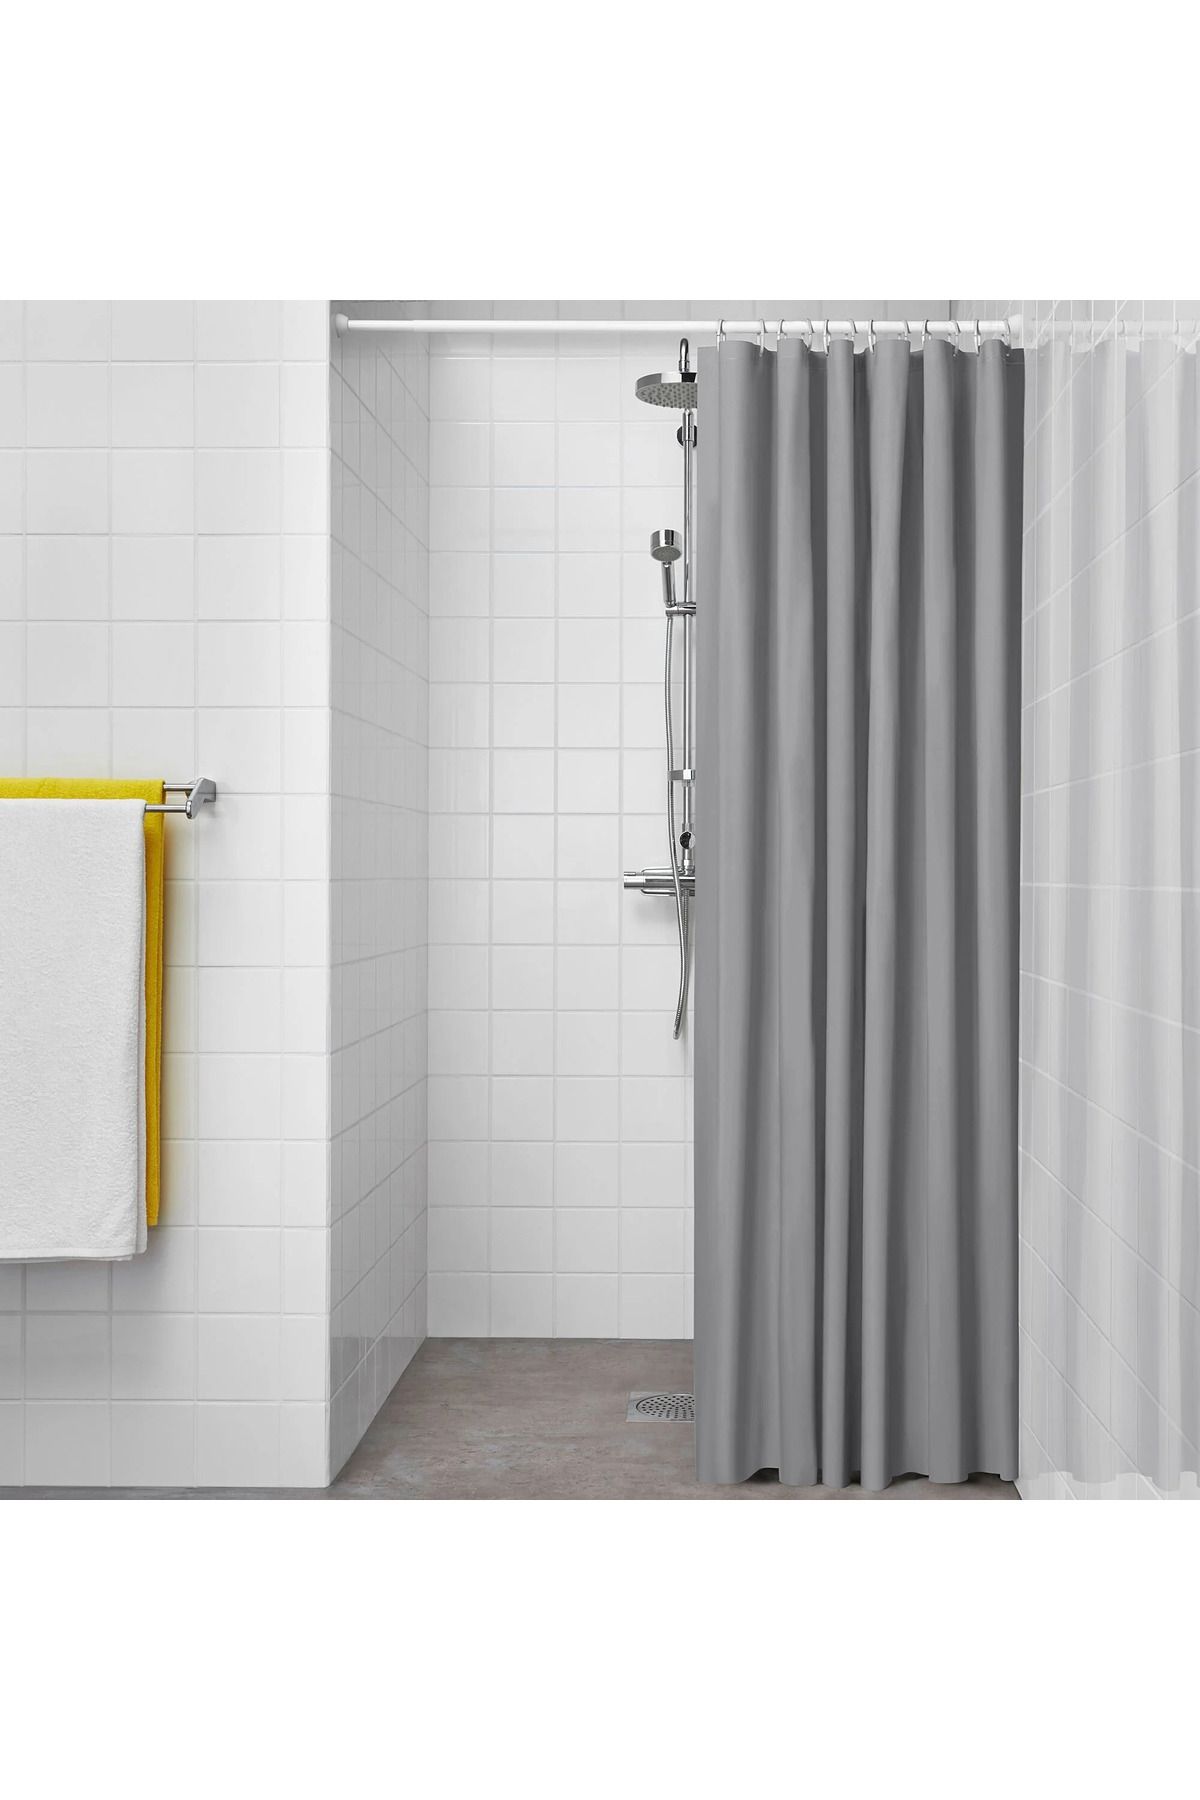 IKEA Gri Duş Perdesi